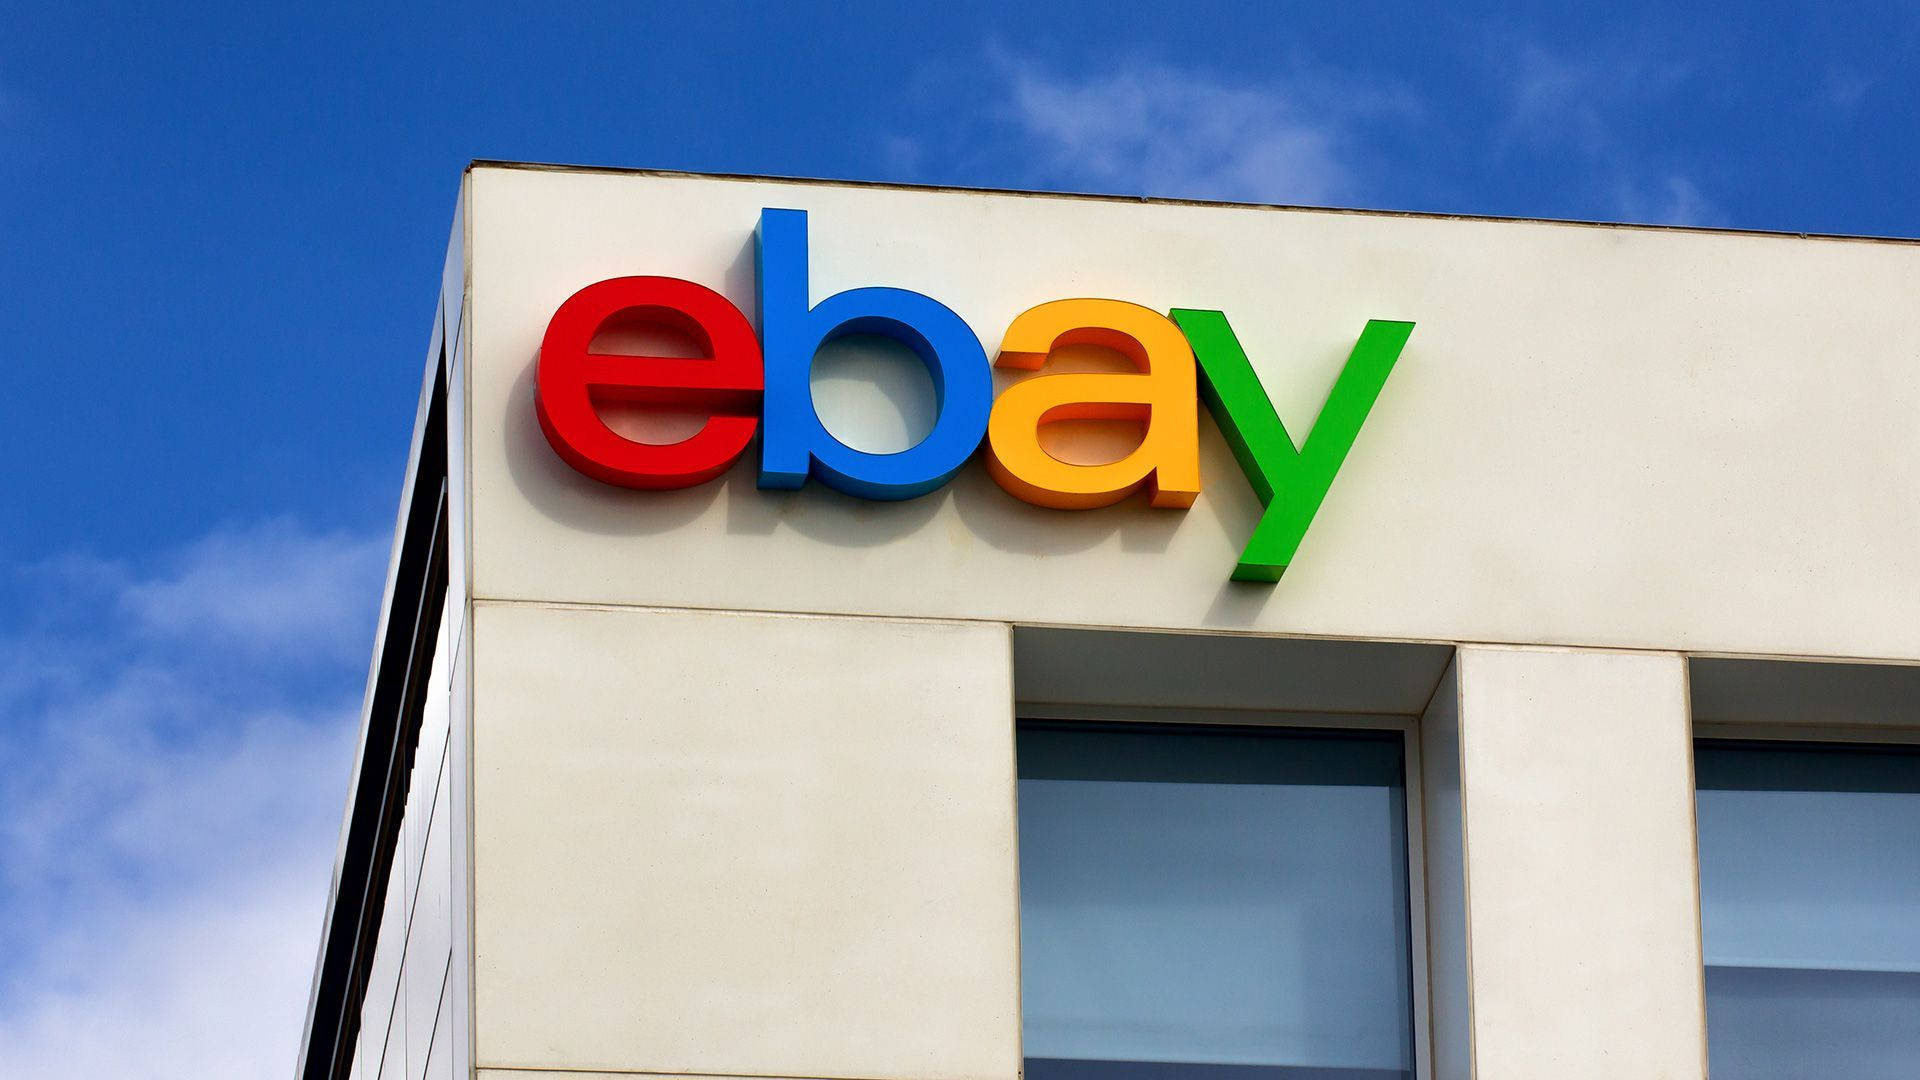 Ebay Symbol On Building Wallpaper